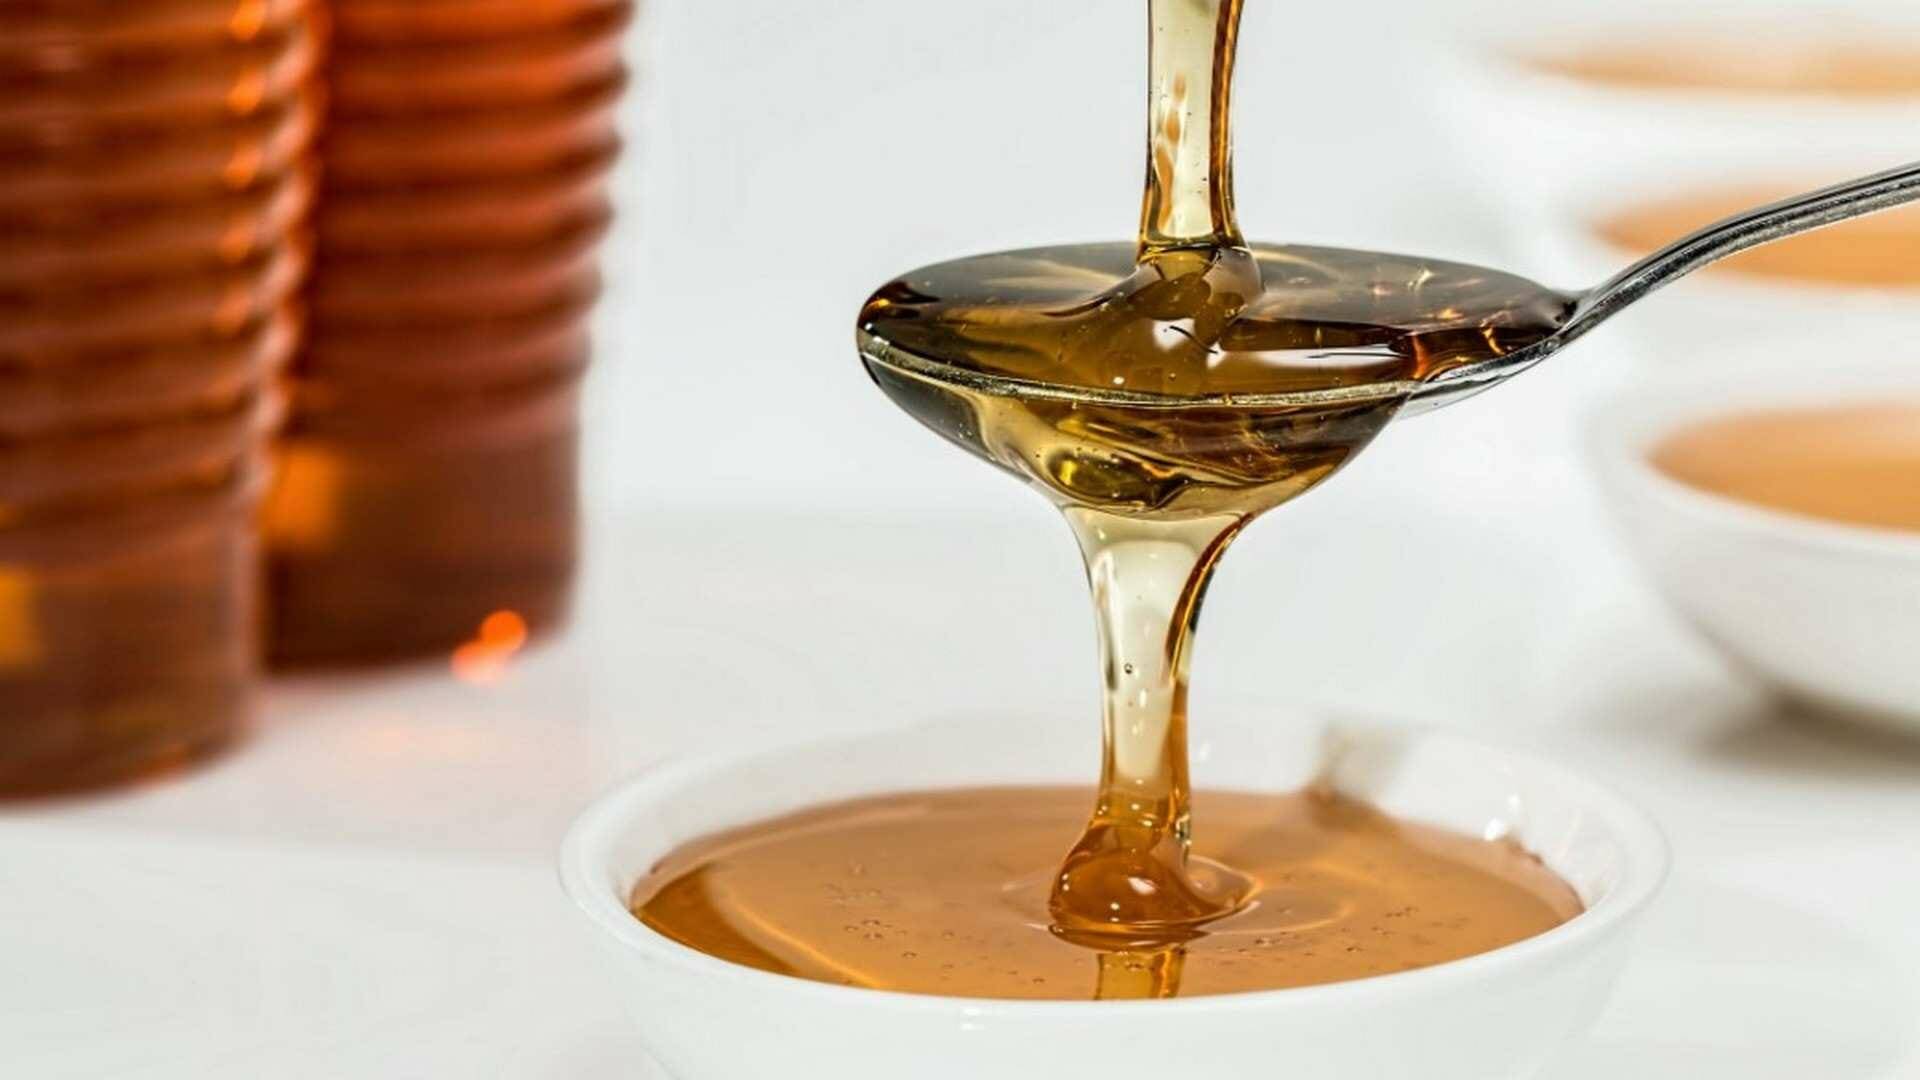 El consumo de miel está estancado en niveles muy bajos